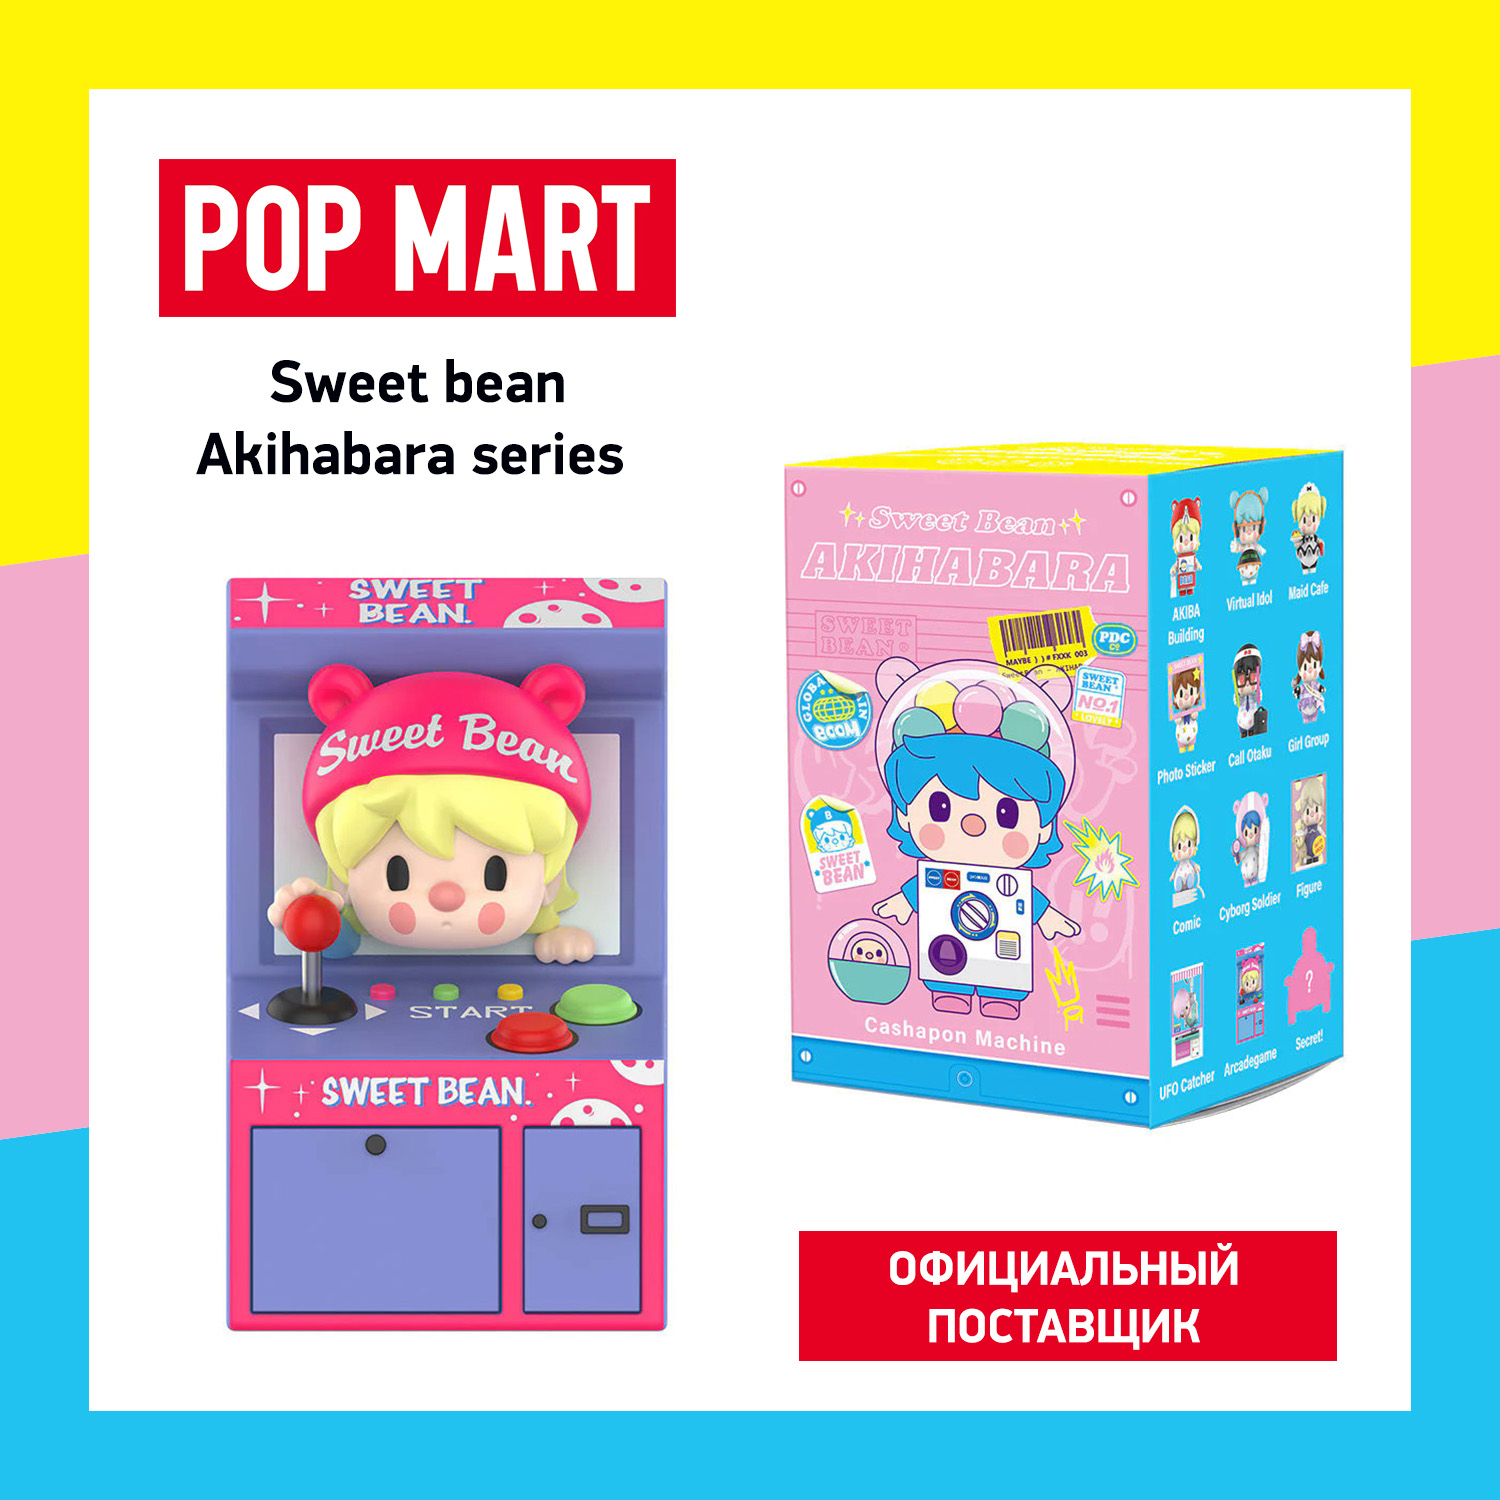 Коллекционная фигурка Pop Mart Sweet Bean Akihabar коллекционная фигурка pop mart duckyo friends wage earner